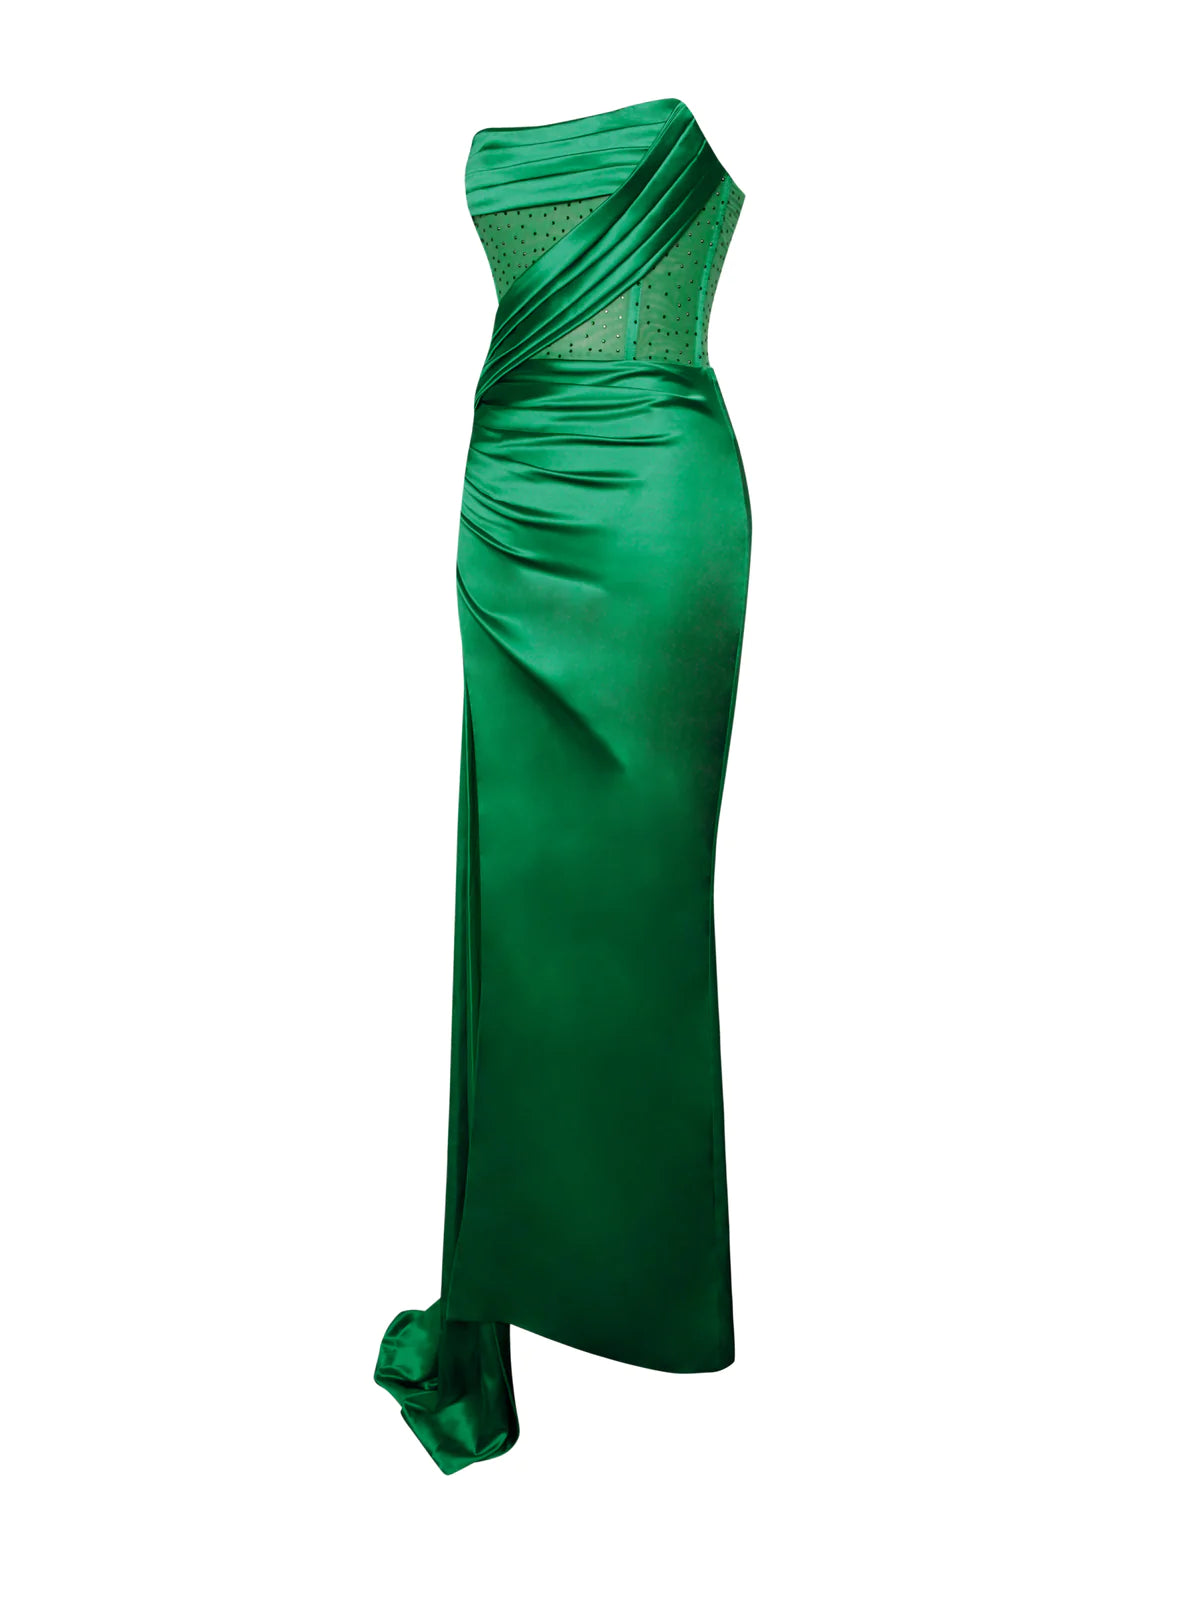 Ava Emerald Green Dress